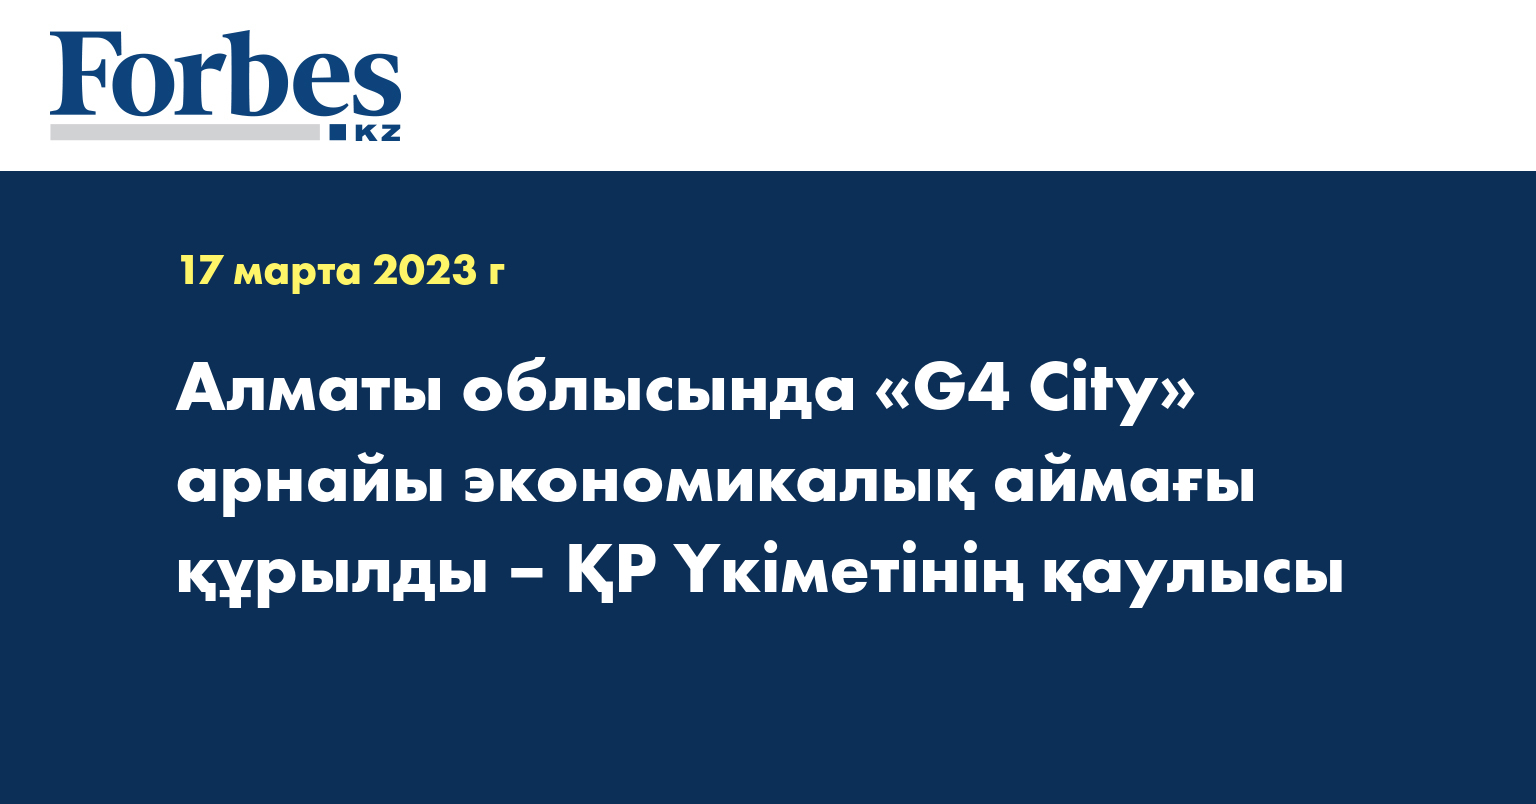 Алматы облысында «G4 City» арнайы экономикалық аймағы құрылды – ҚР Үкіметінің қаулысы